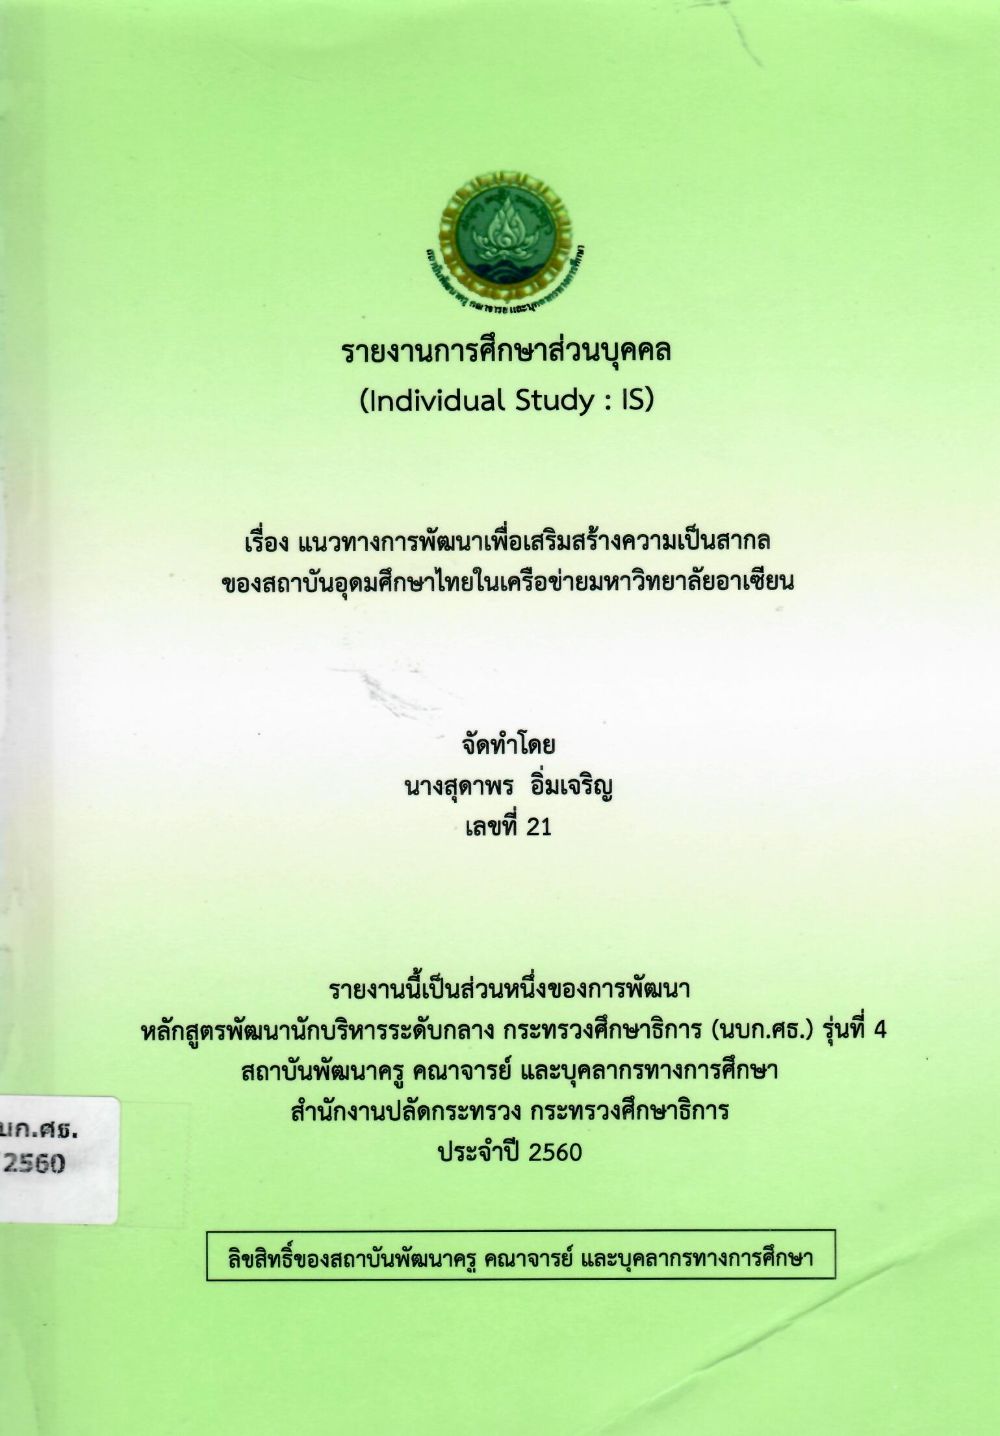 แนวทางการพัฒนาเพื่อเสริมสร้างความเป็นสากลของสถาบันอุดมศึกษาไทยในเครือข่ายมหาวิทยาลัยอาเซียน: รายงานการศึกษาส่วนบุคคล (Individual Study)/ สุดาพร อิ่มเจริญ